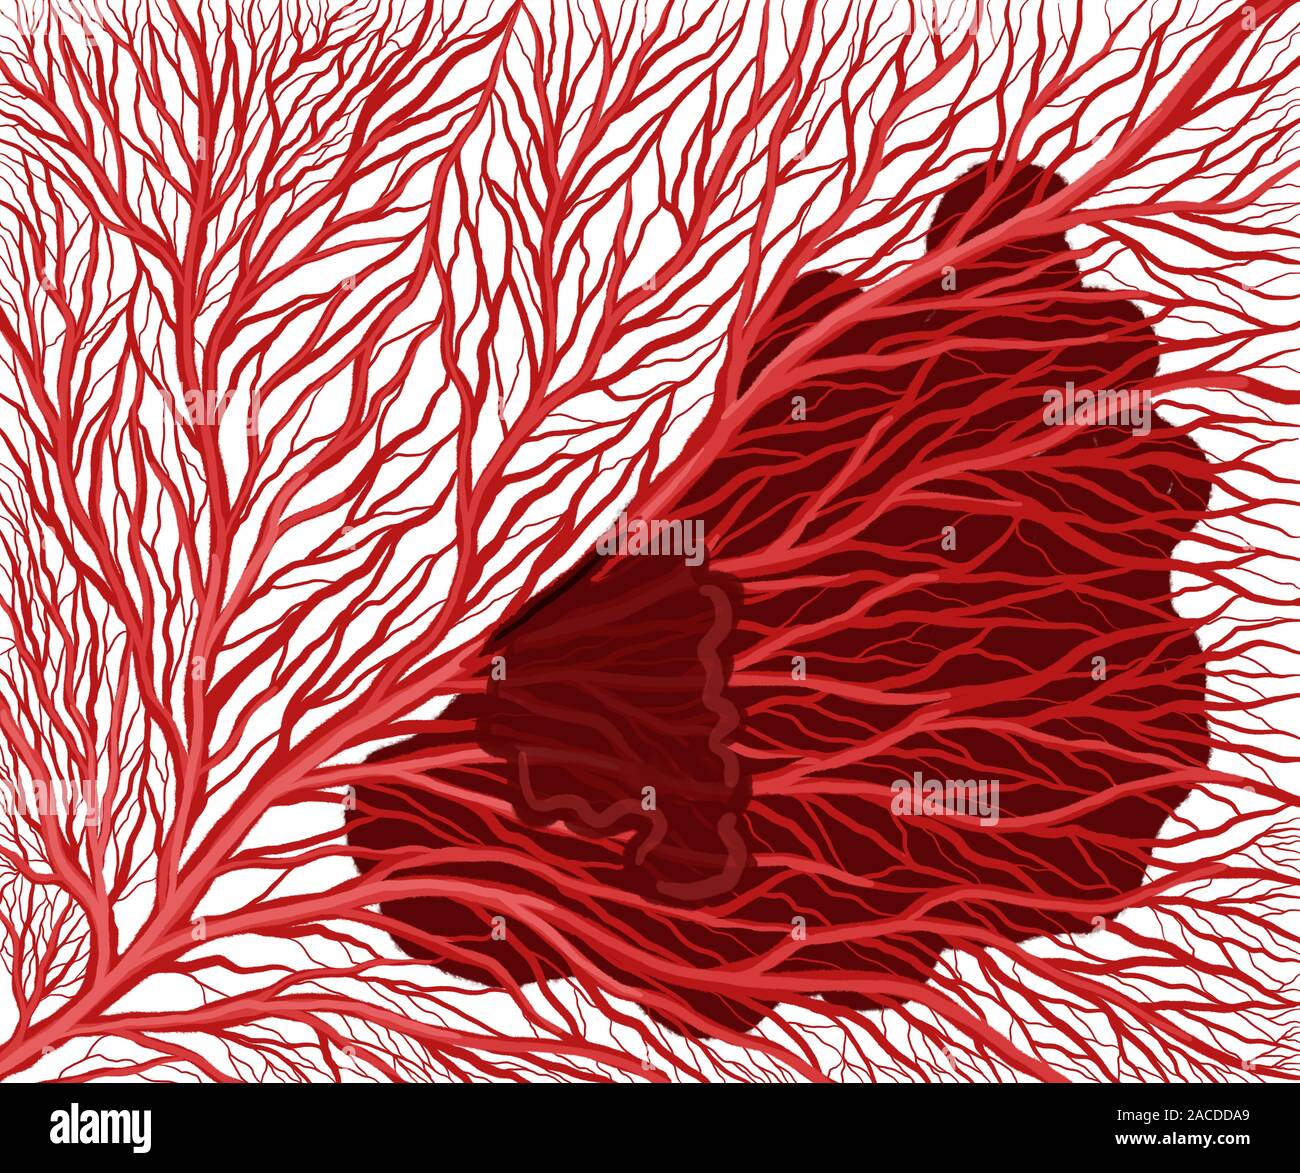 Darstellung der kapillaren Netzwerks und roten Blutkörperchen Stockfoto